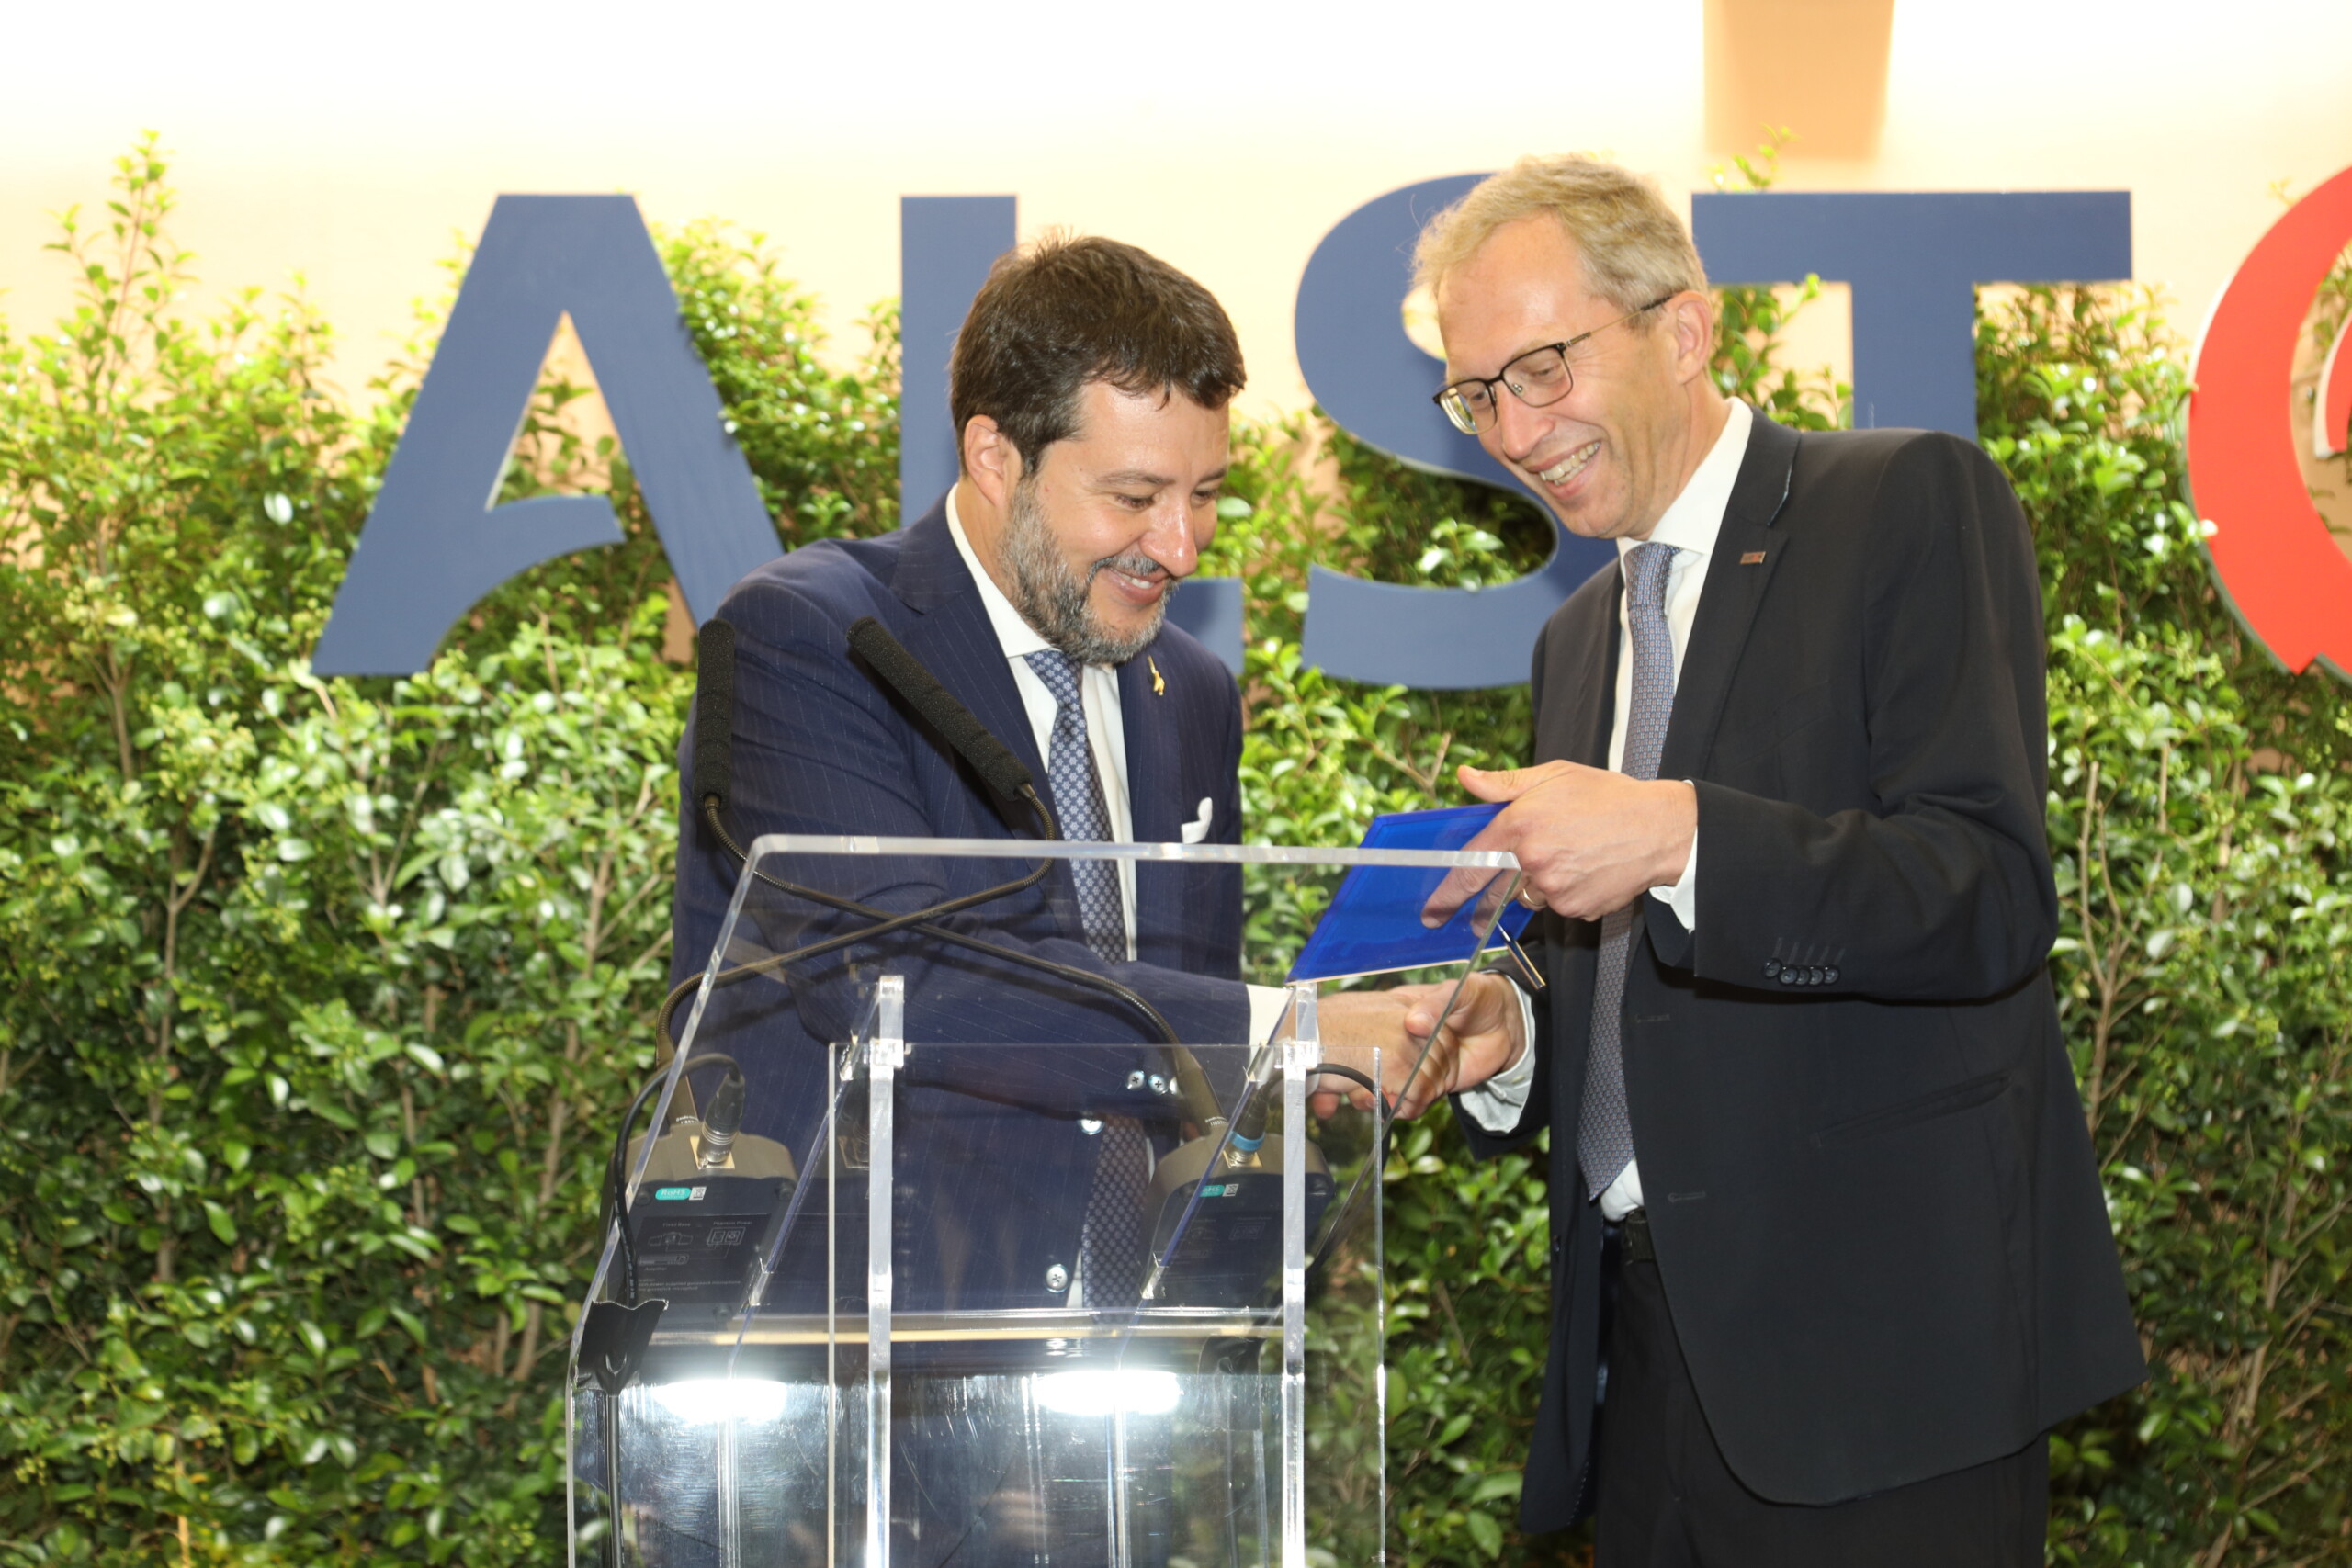 Alstom inaugura una nuova sede a Roma